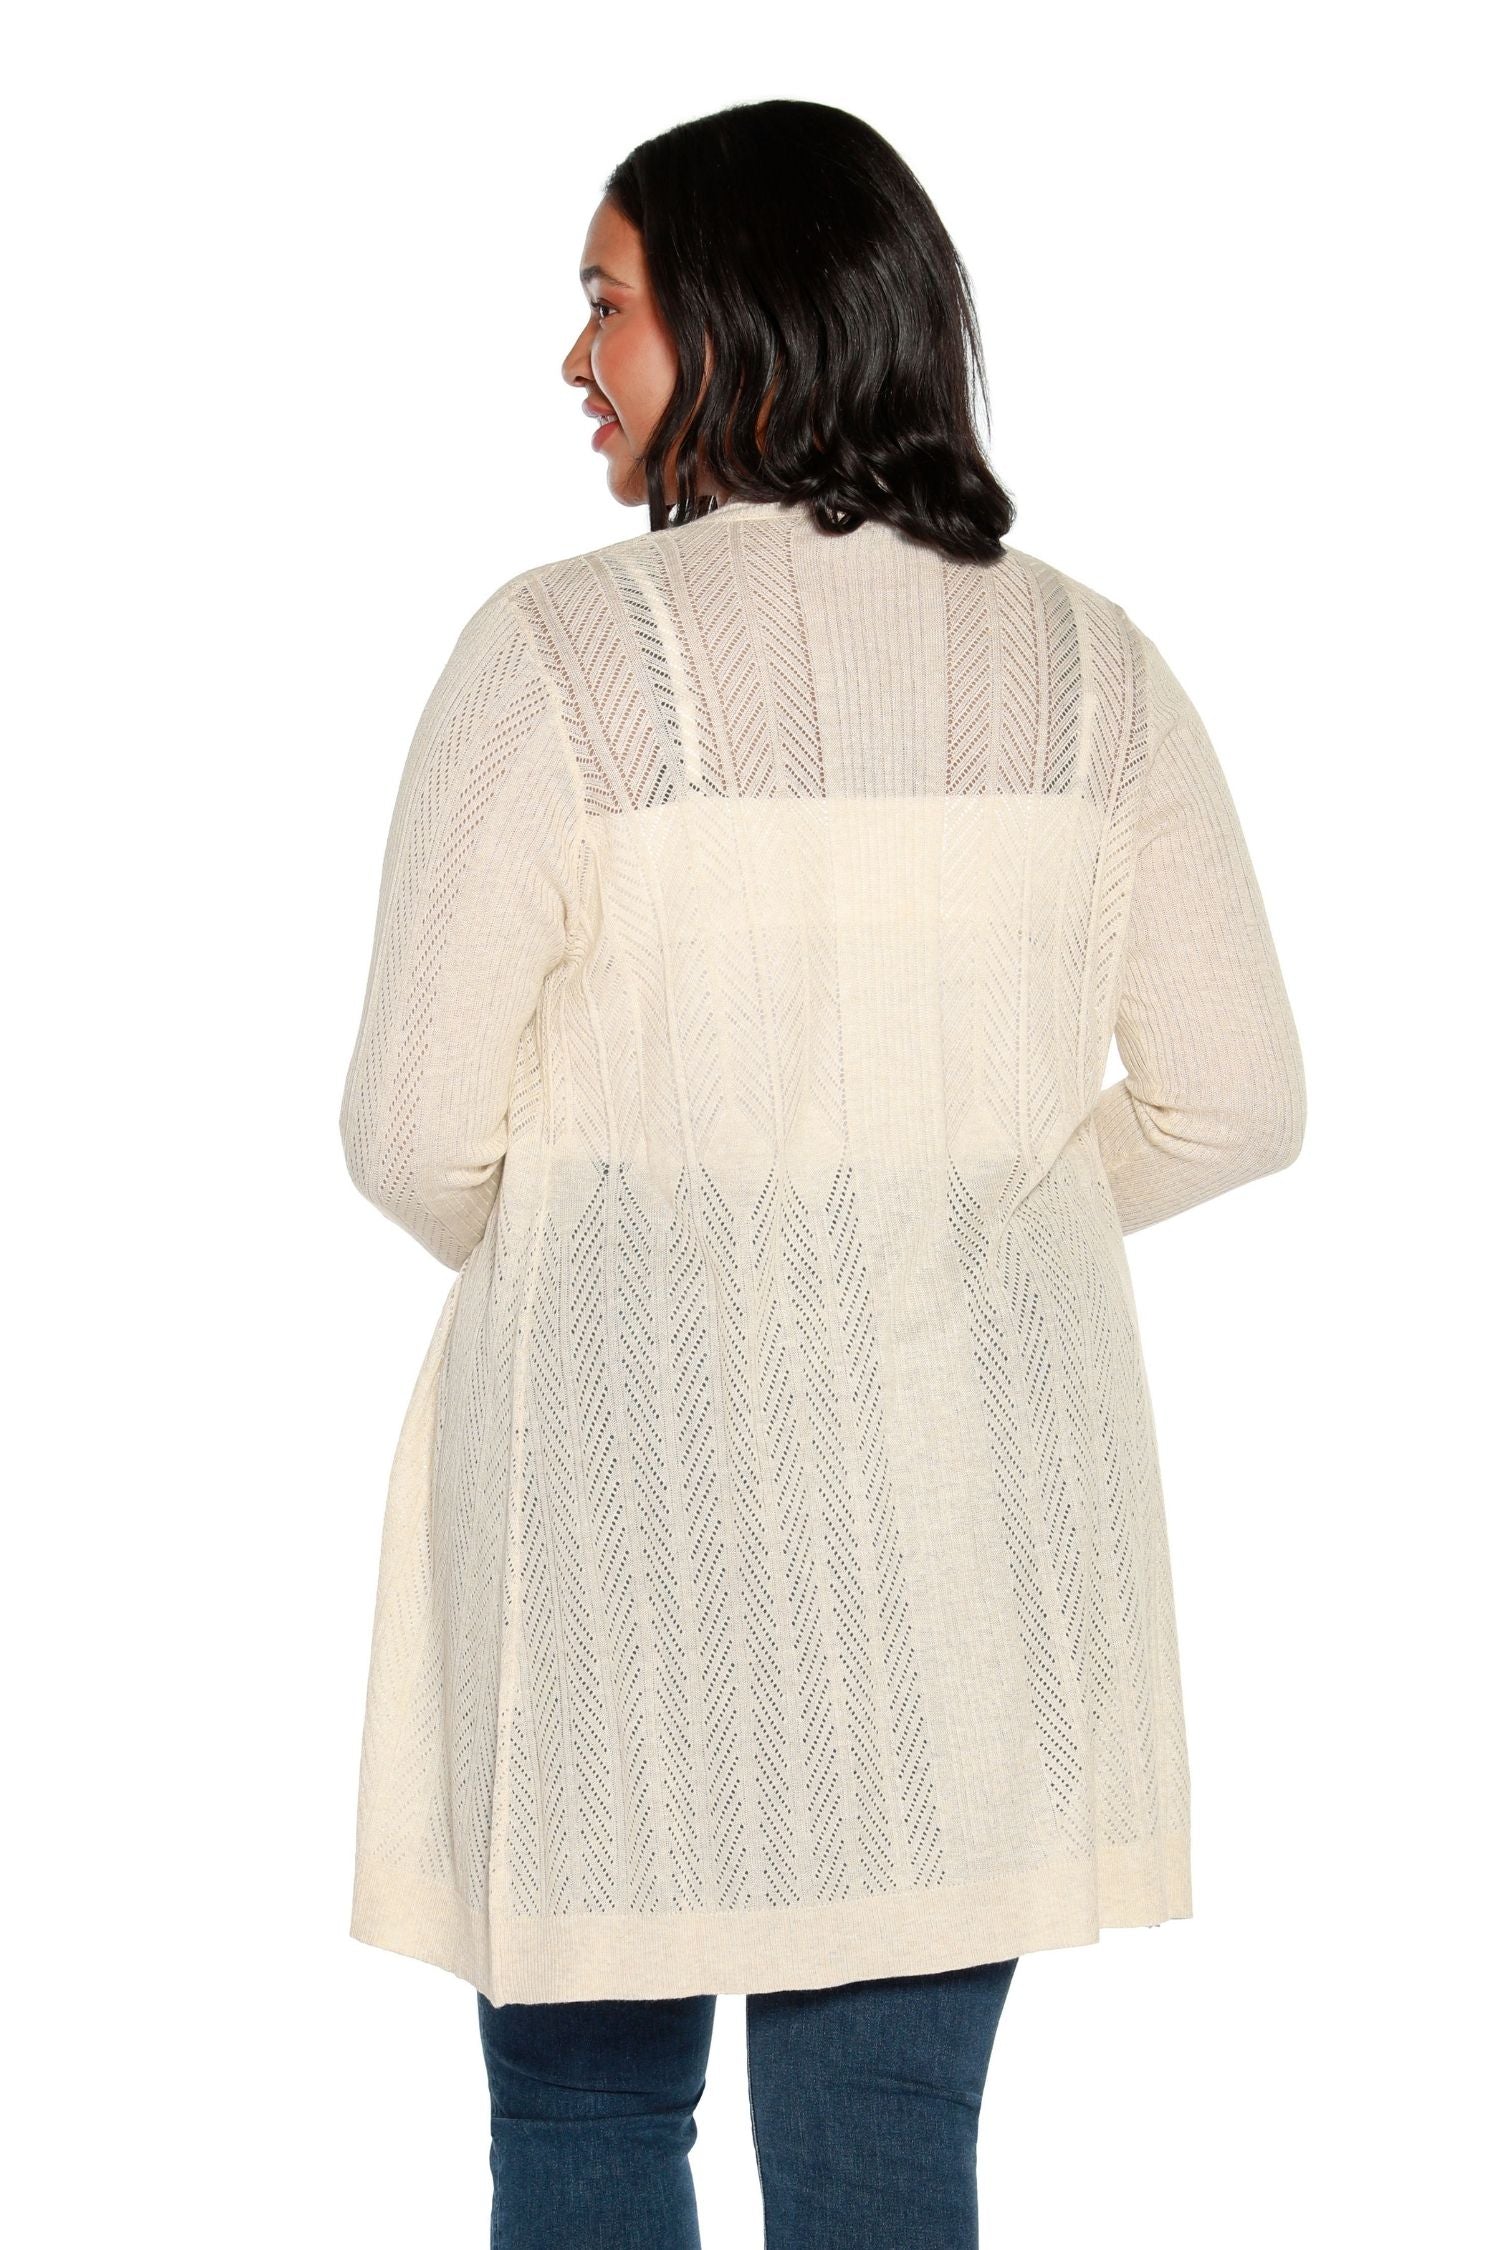 Cárdigan largo transparente para mujer con rayas de chevrón de crochet y punto pointelle | con curvas